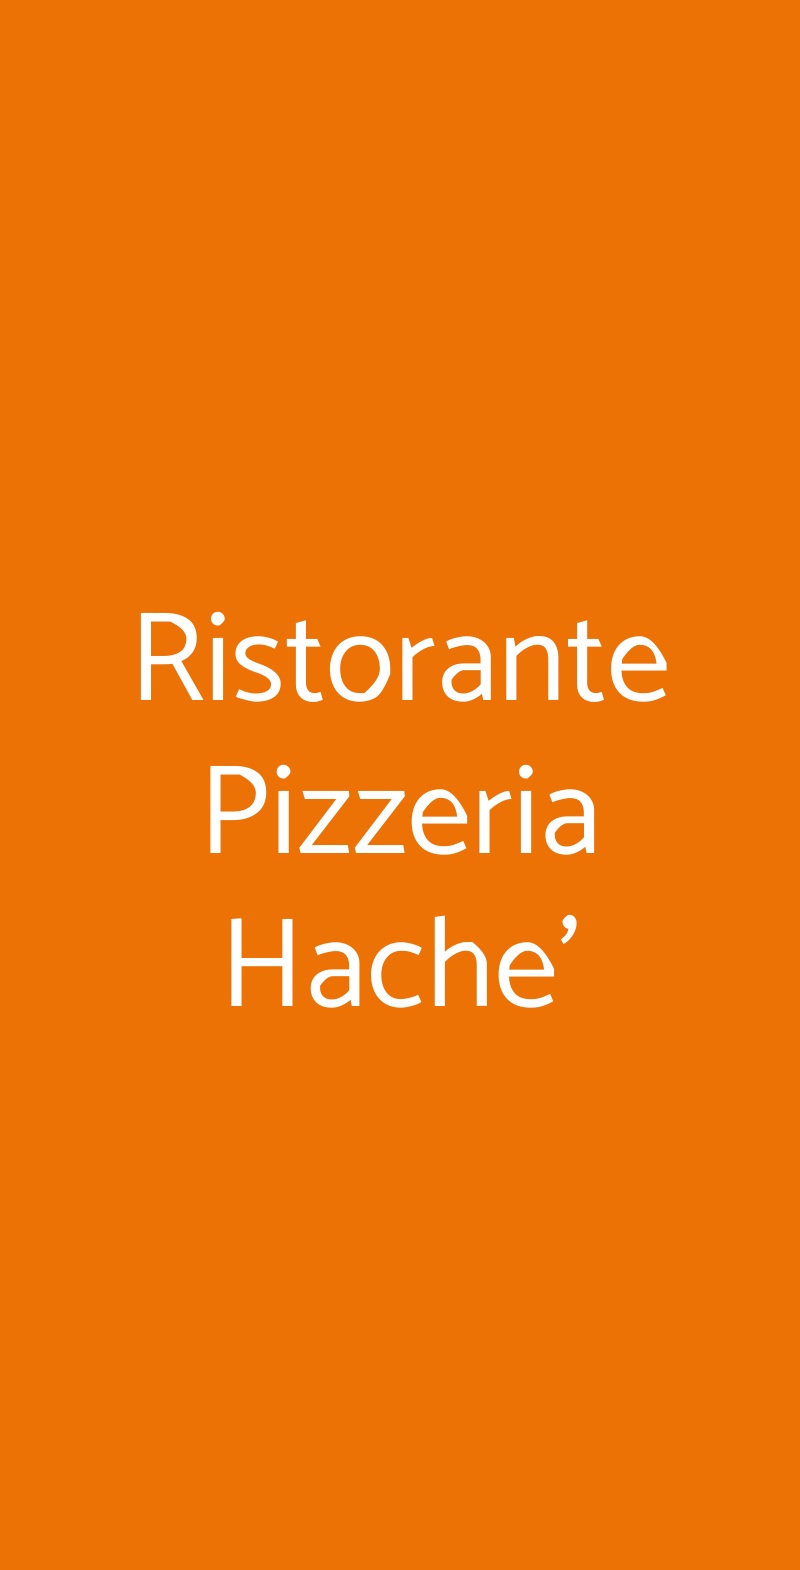 Ristorante Pizzeria Hache' Napoli menù 1 pagina